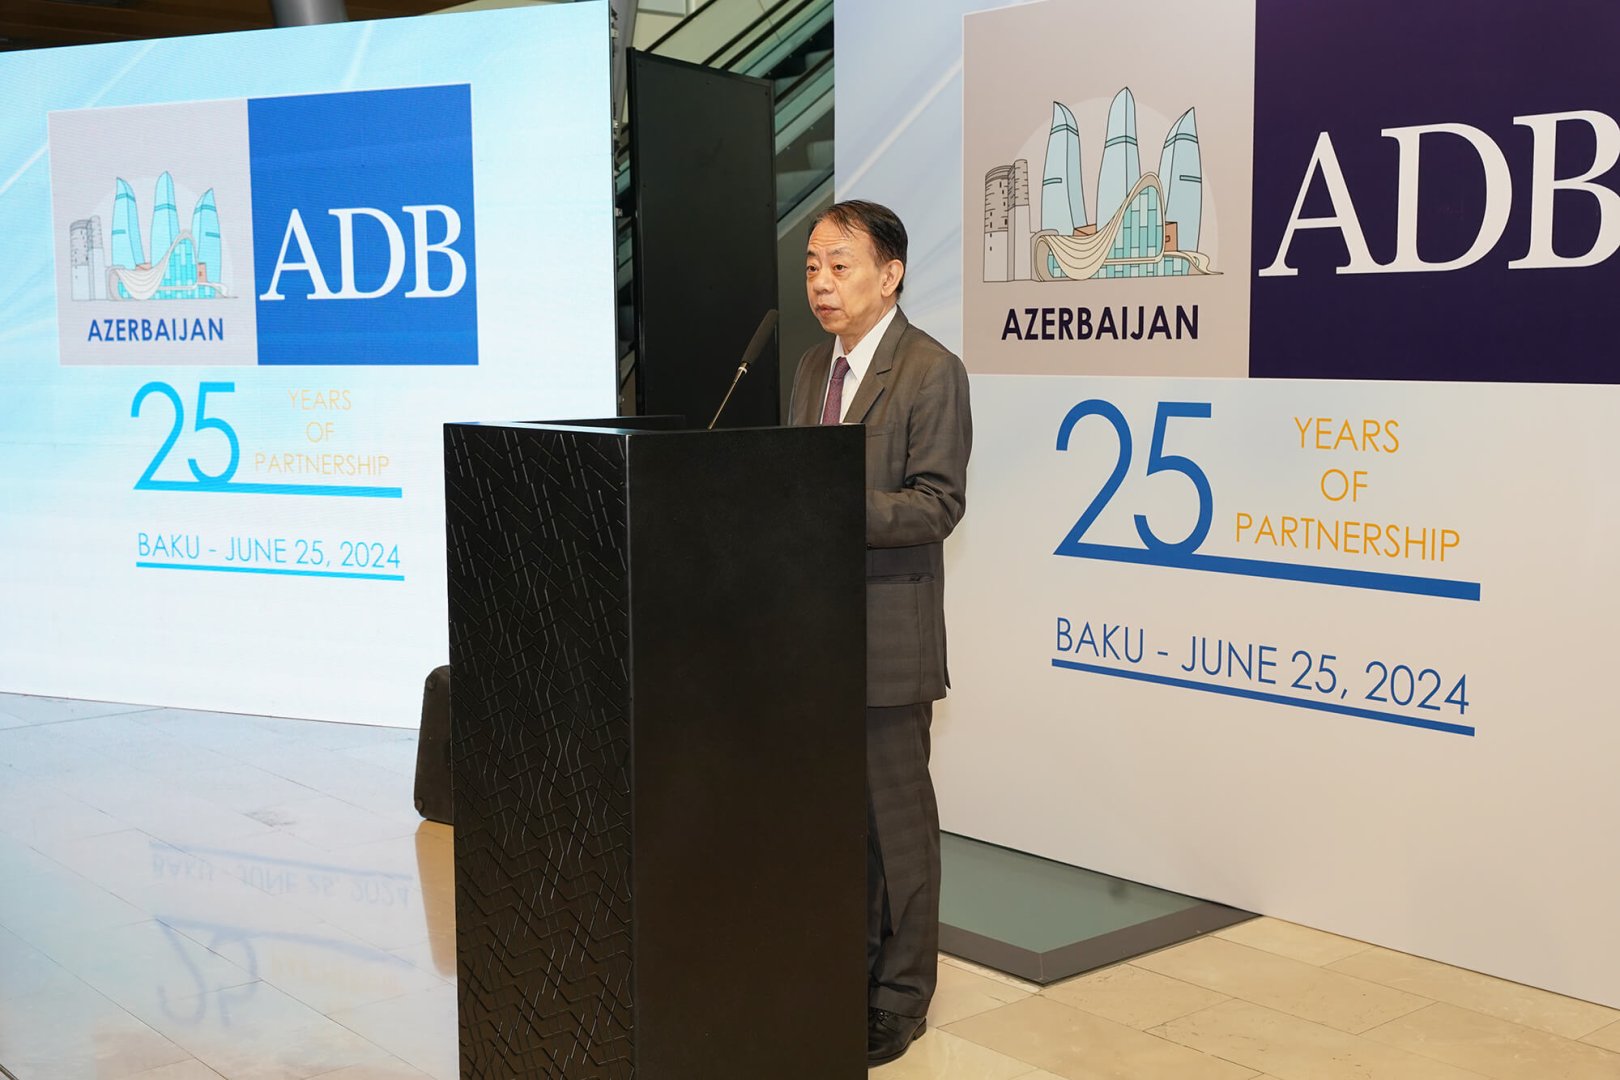 СОР29 укрепит ведущую роль Азербайджана в решении глобальных проблем, связанных с изменением климата - президент АБР